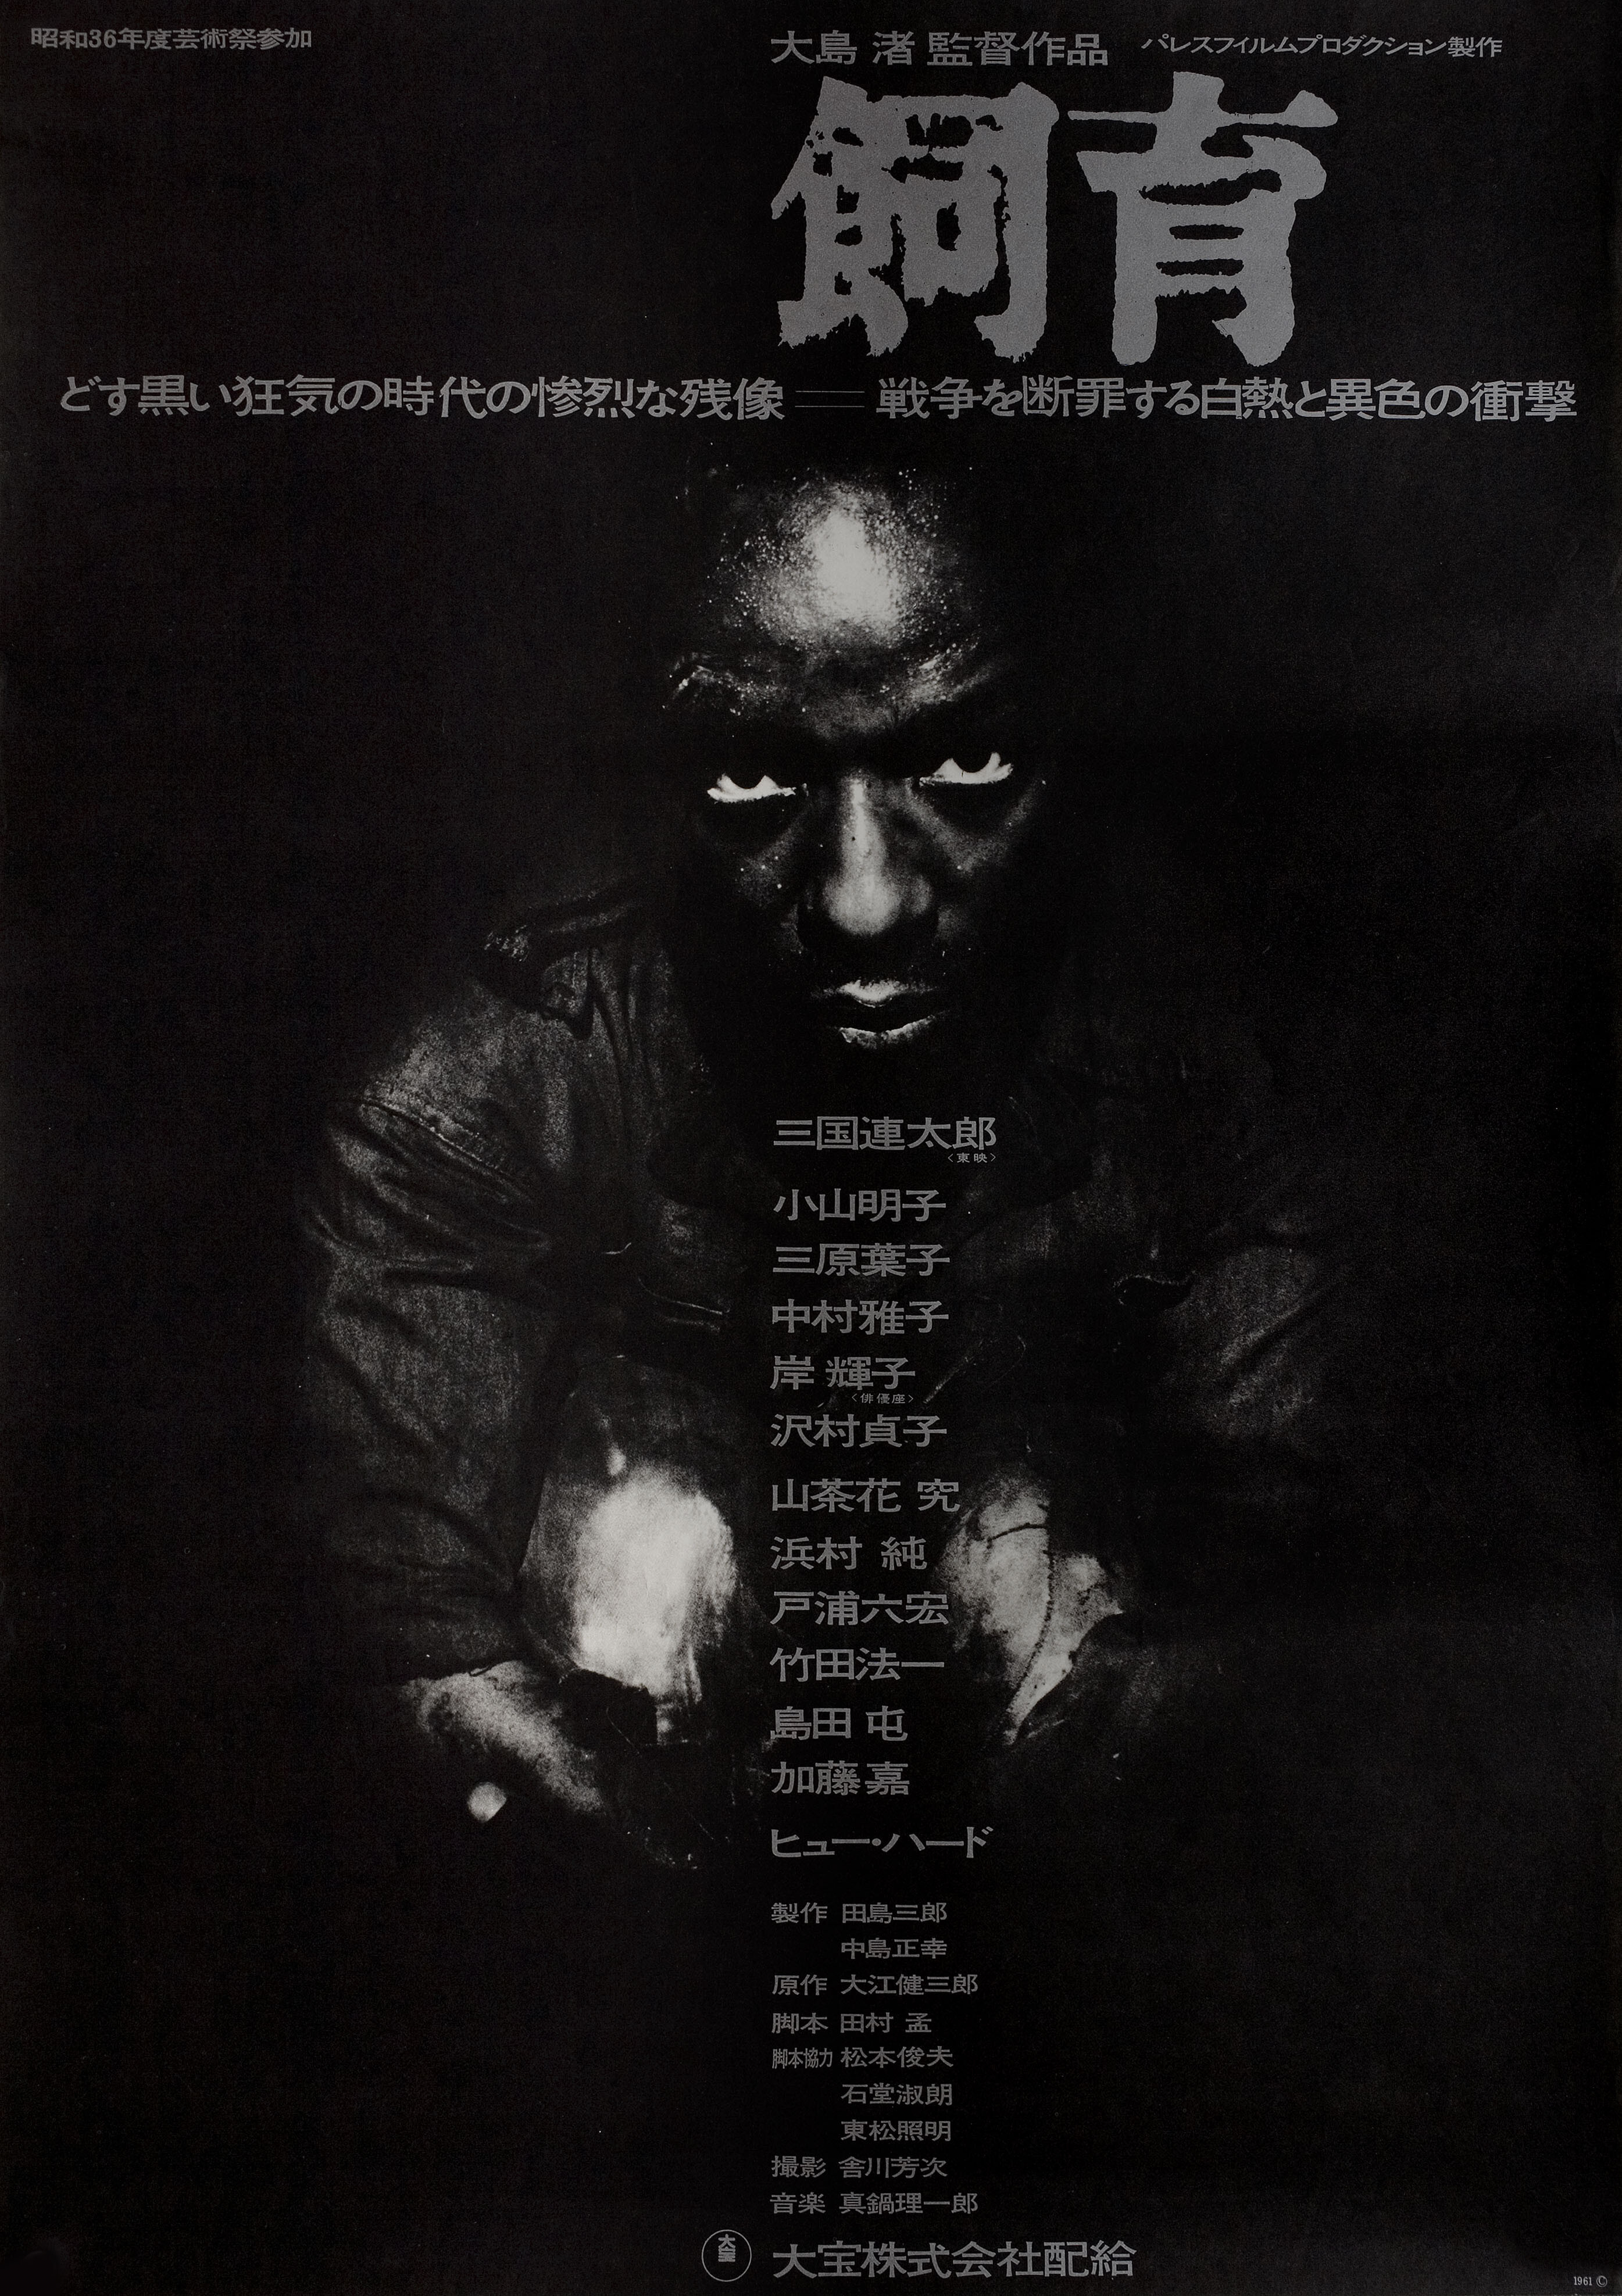 Содержание скотины (The Catch, 1961), режиссёр Нагиса Осима, минималистичный постер к фильму (Япония, 1961 год)